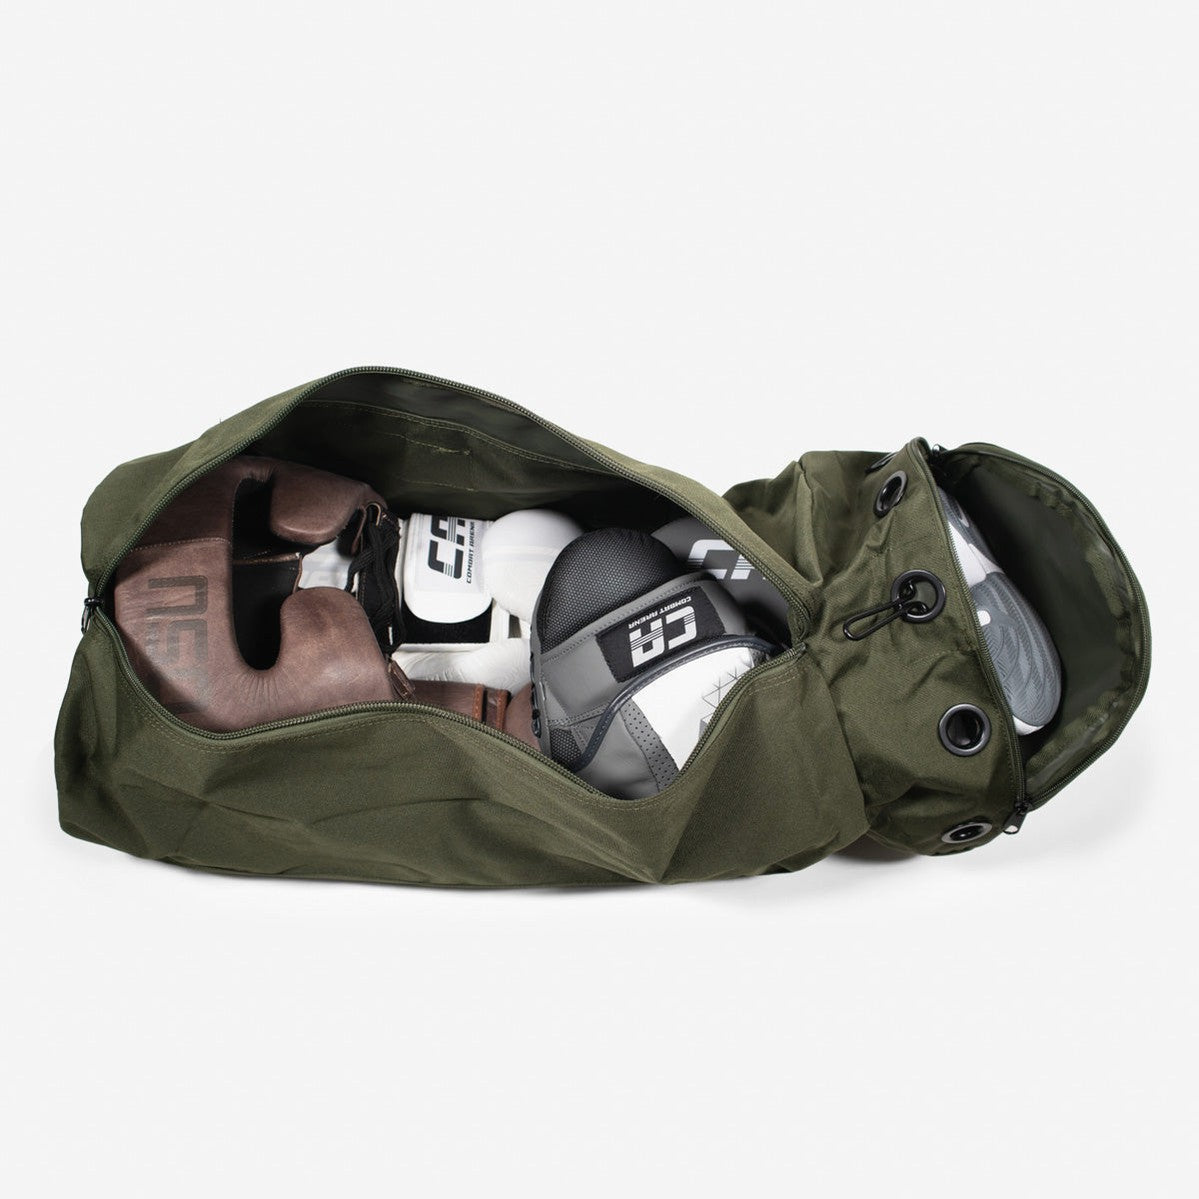 Torba Leone Commando AC903 Green Duffel Bag